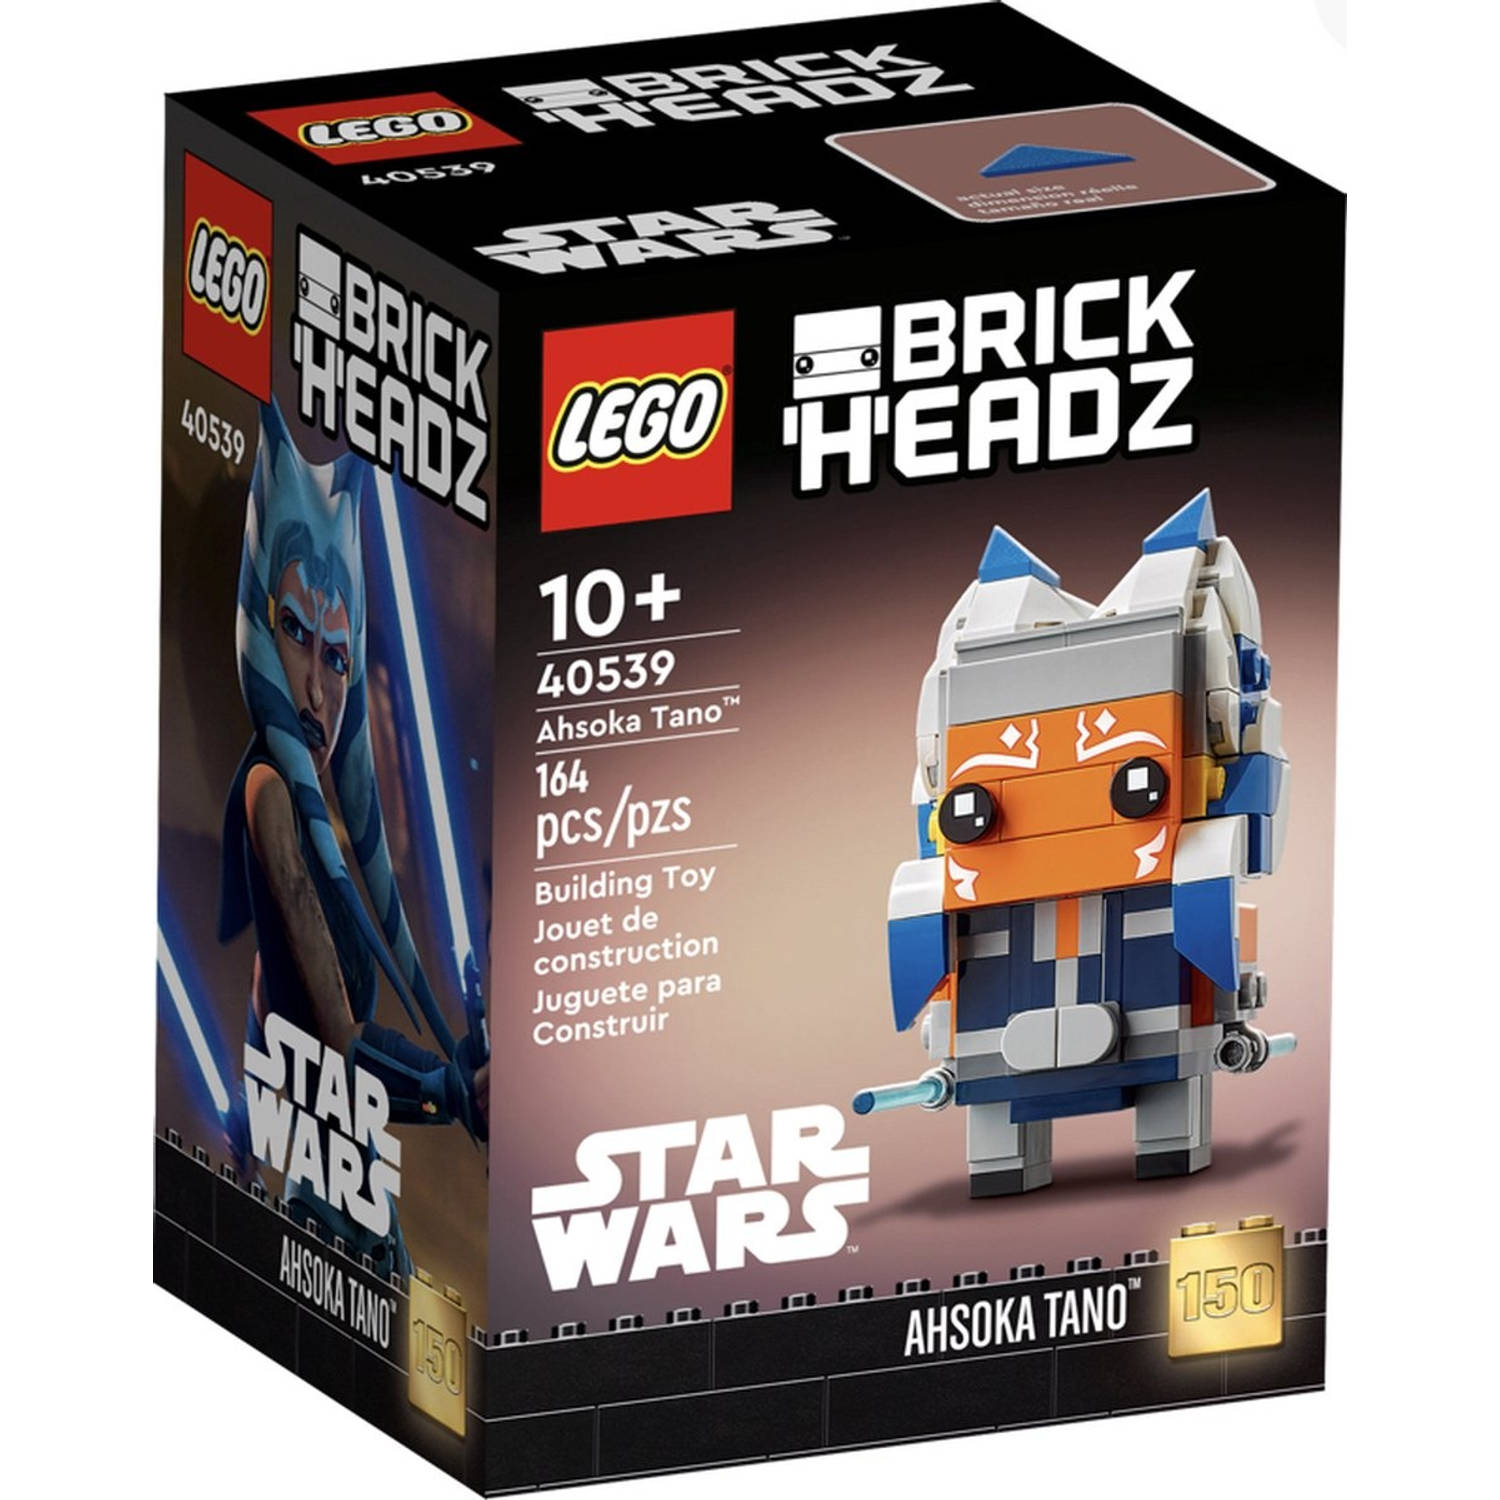 LEGO BrickHeads Star Wars Ahsoka Tano